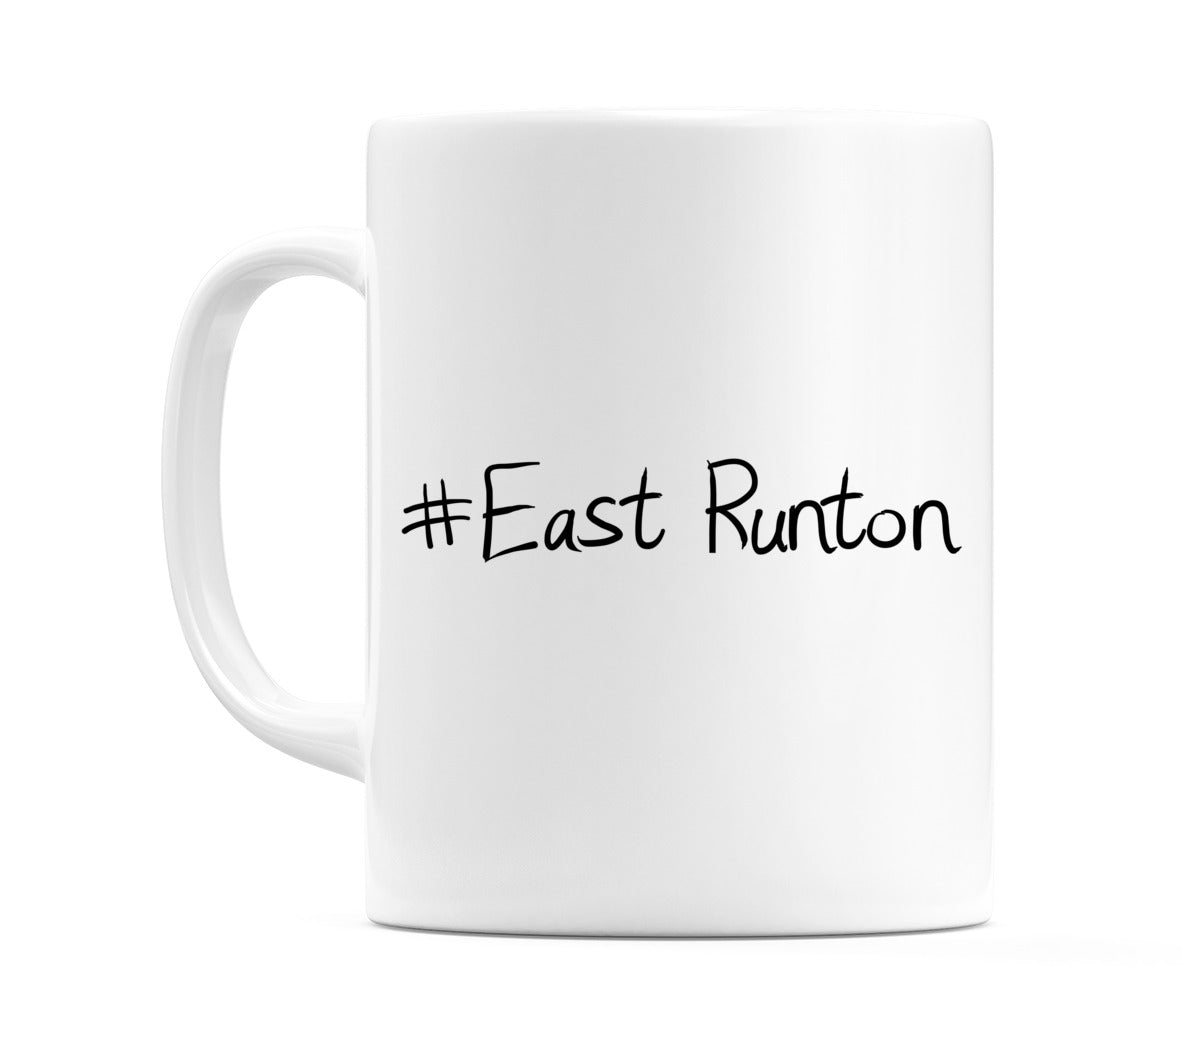 #East Runton Mug